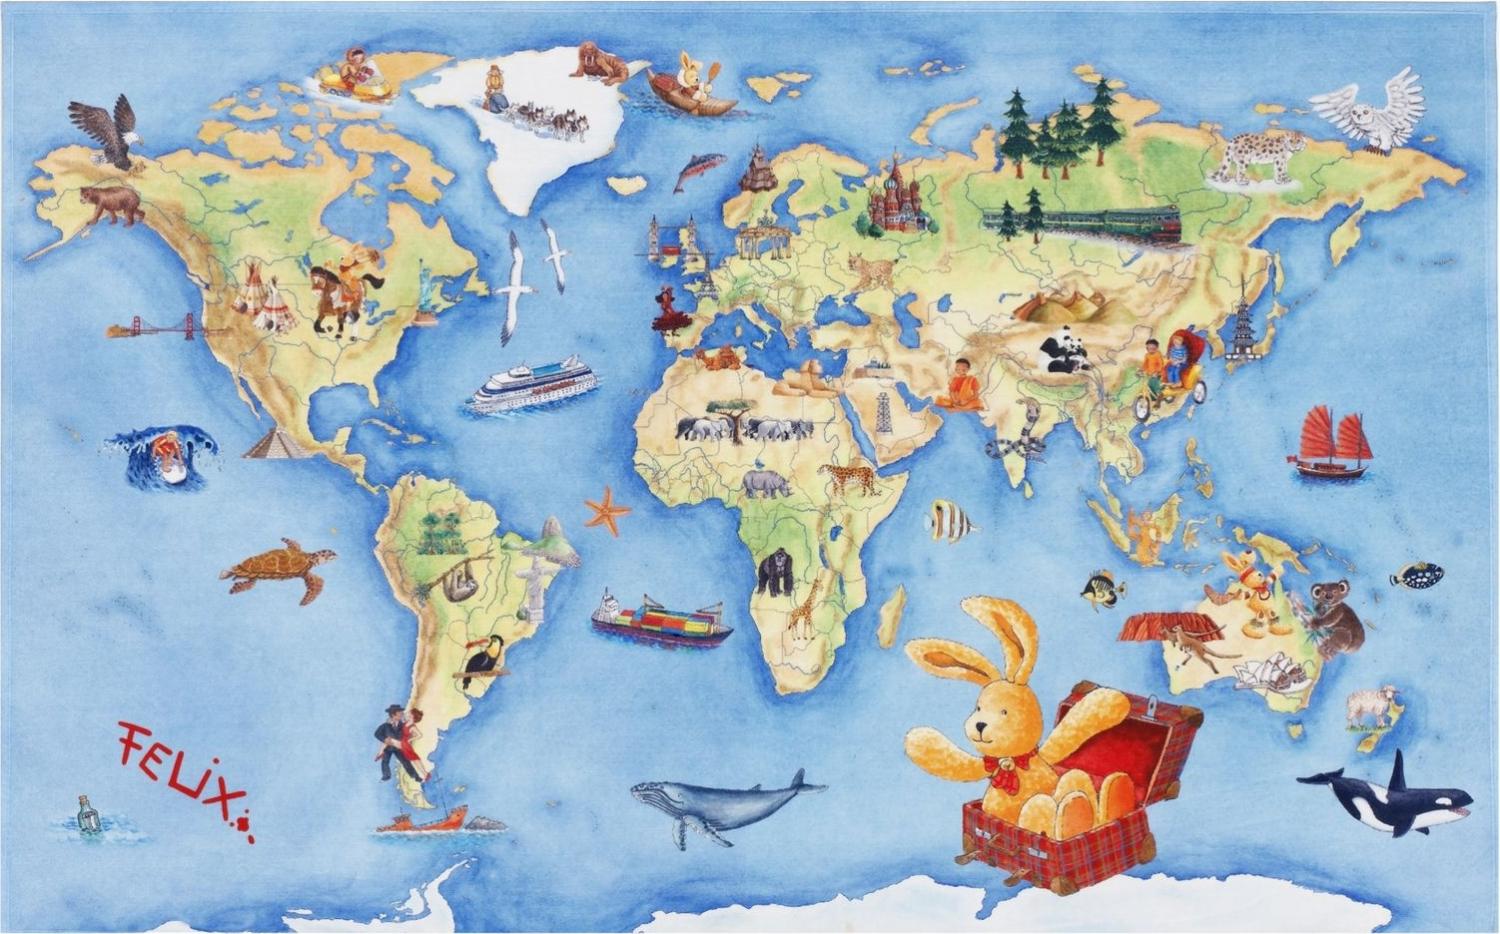 Kinderteppich- FELiX Spiel und Lern Teppich, Die Weltkarte, in Zwei Größen, Teppich 160 x 100 cm Bild 1